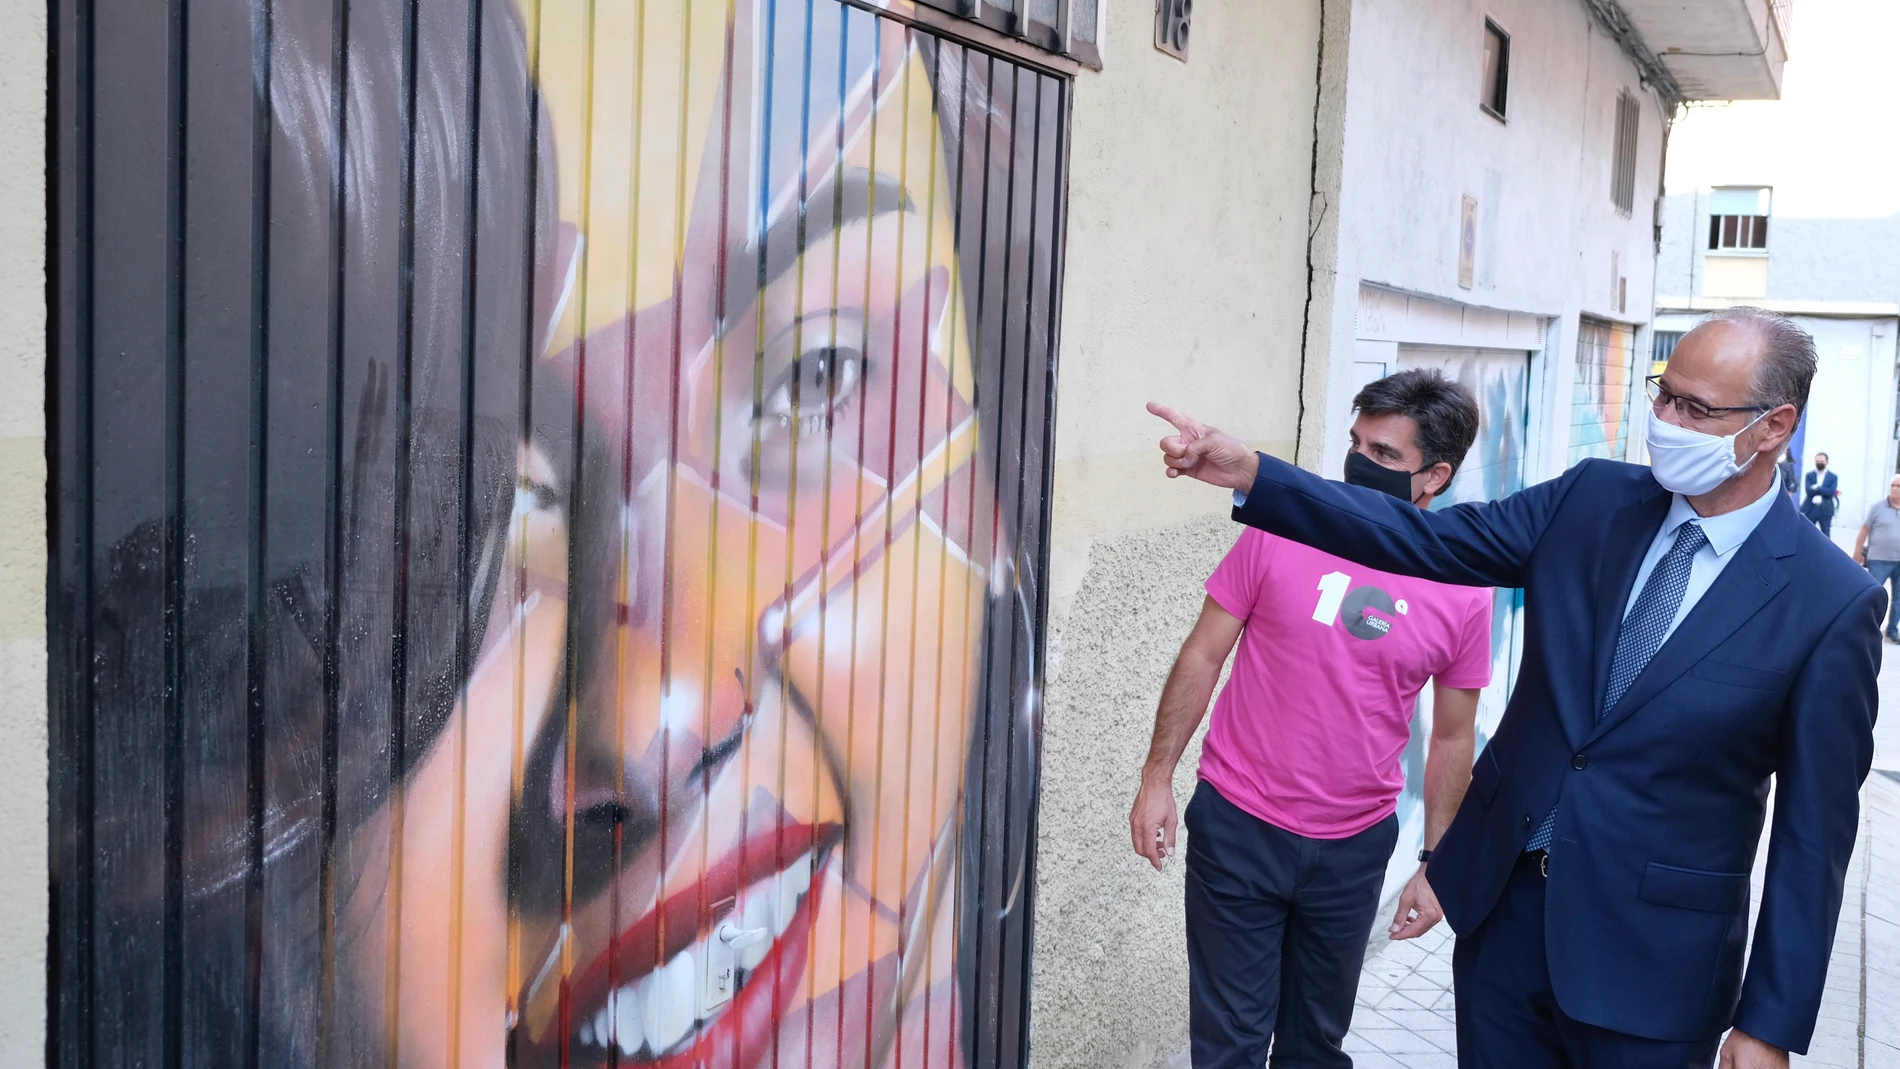 El presidente de las Cortes y de la Fundación de Castilla y León, Luis Fuentes, visita los murales realizados en el Barrio del Oeste de Salamanca, en el marco del proyecto Galería Urbana